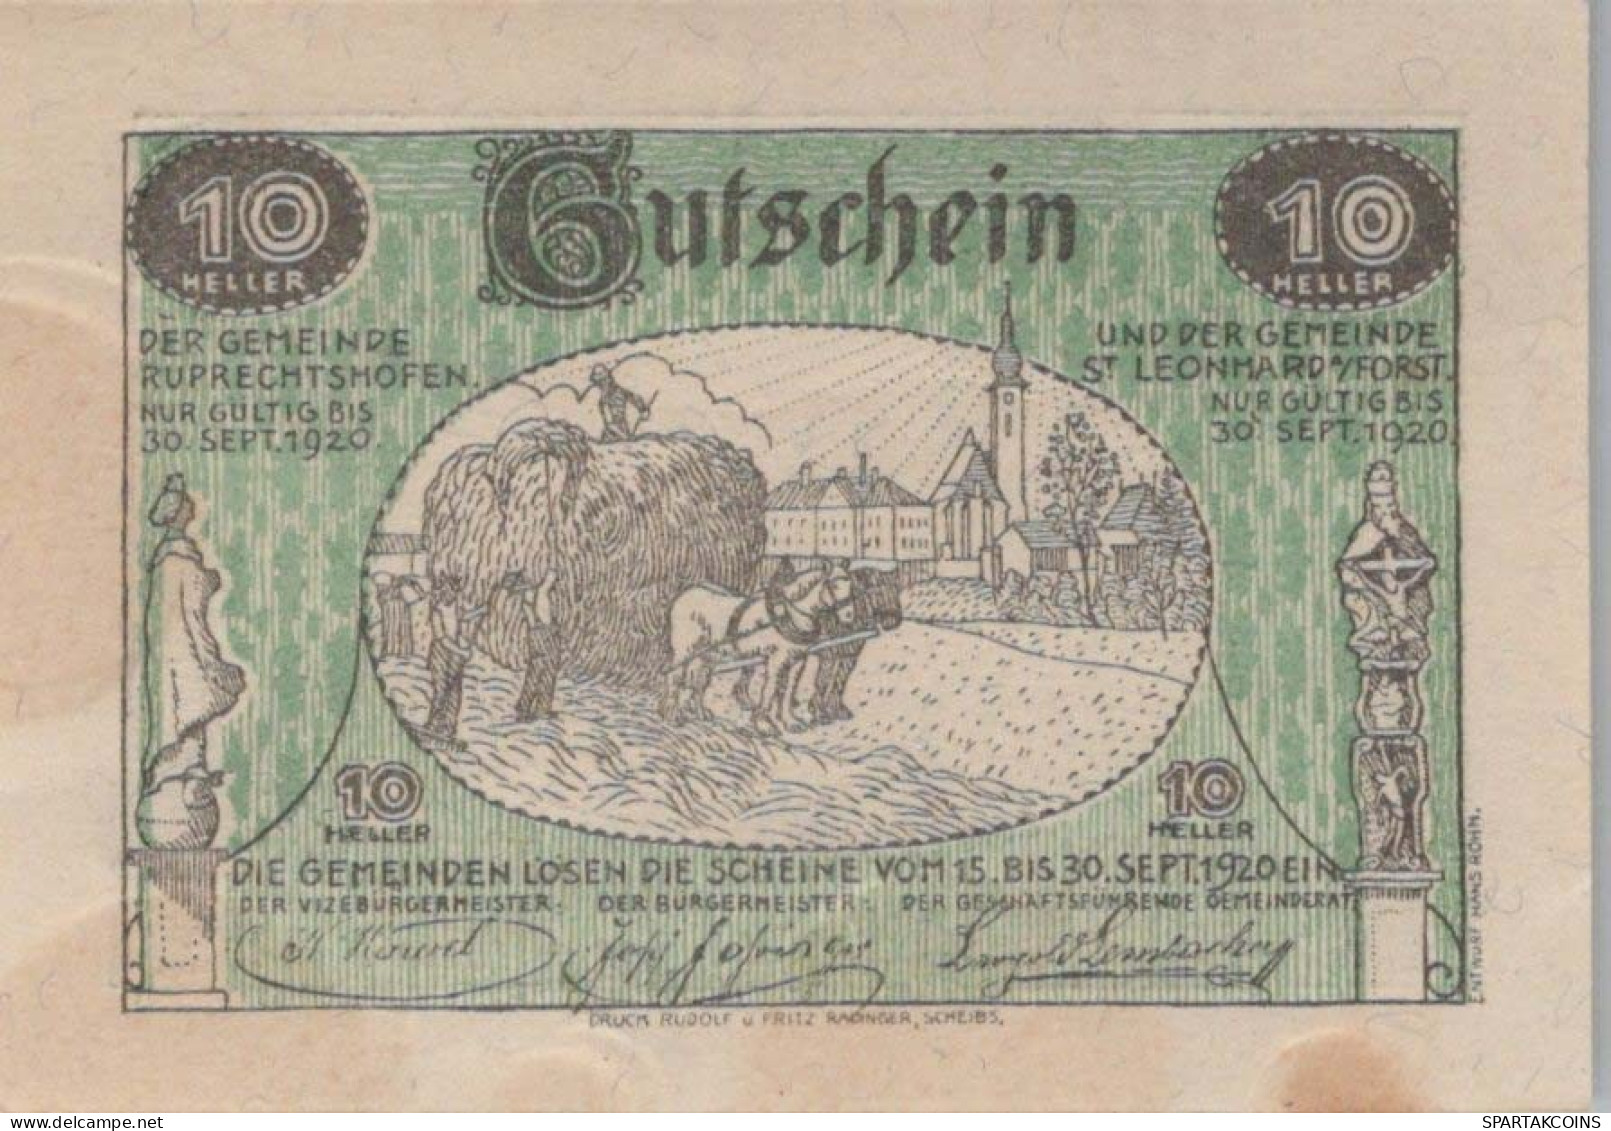 10 HELLER 1920 SANKT LEONHARD AM FORST AND RUPRECHTSHOFEN Österreich #PF009 - [11] Local Banknote Issues